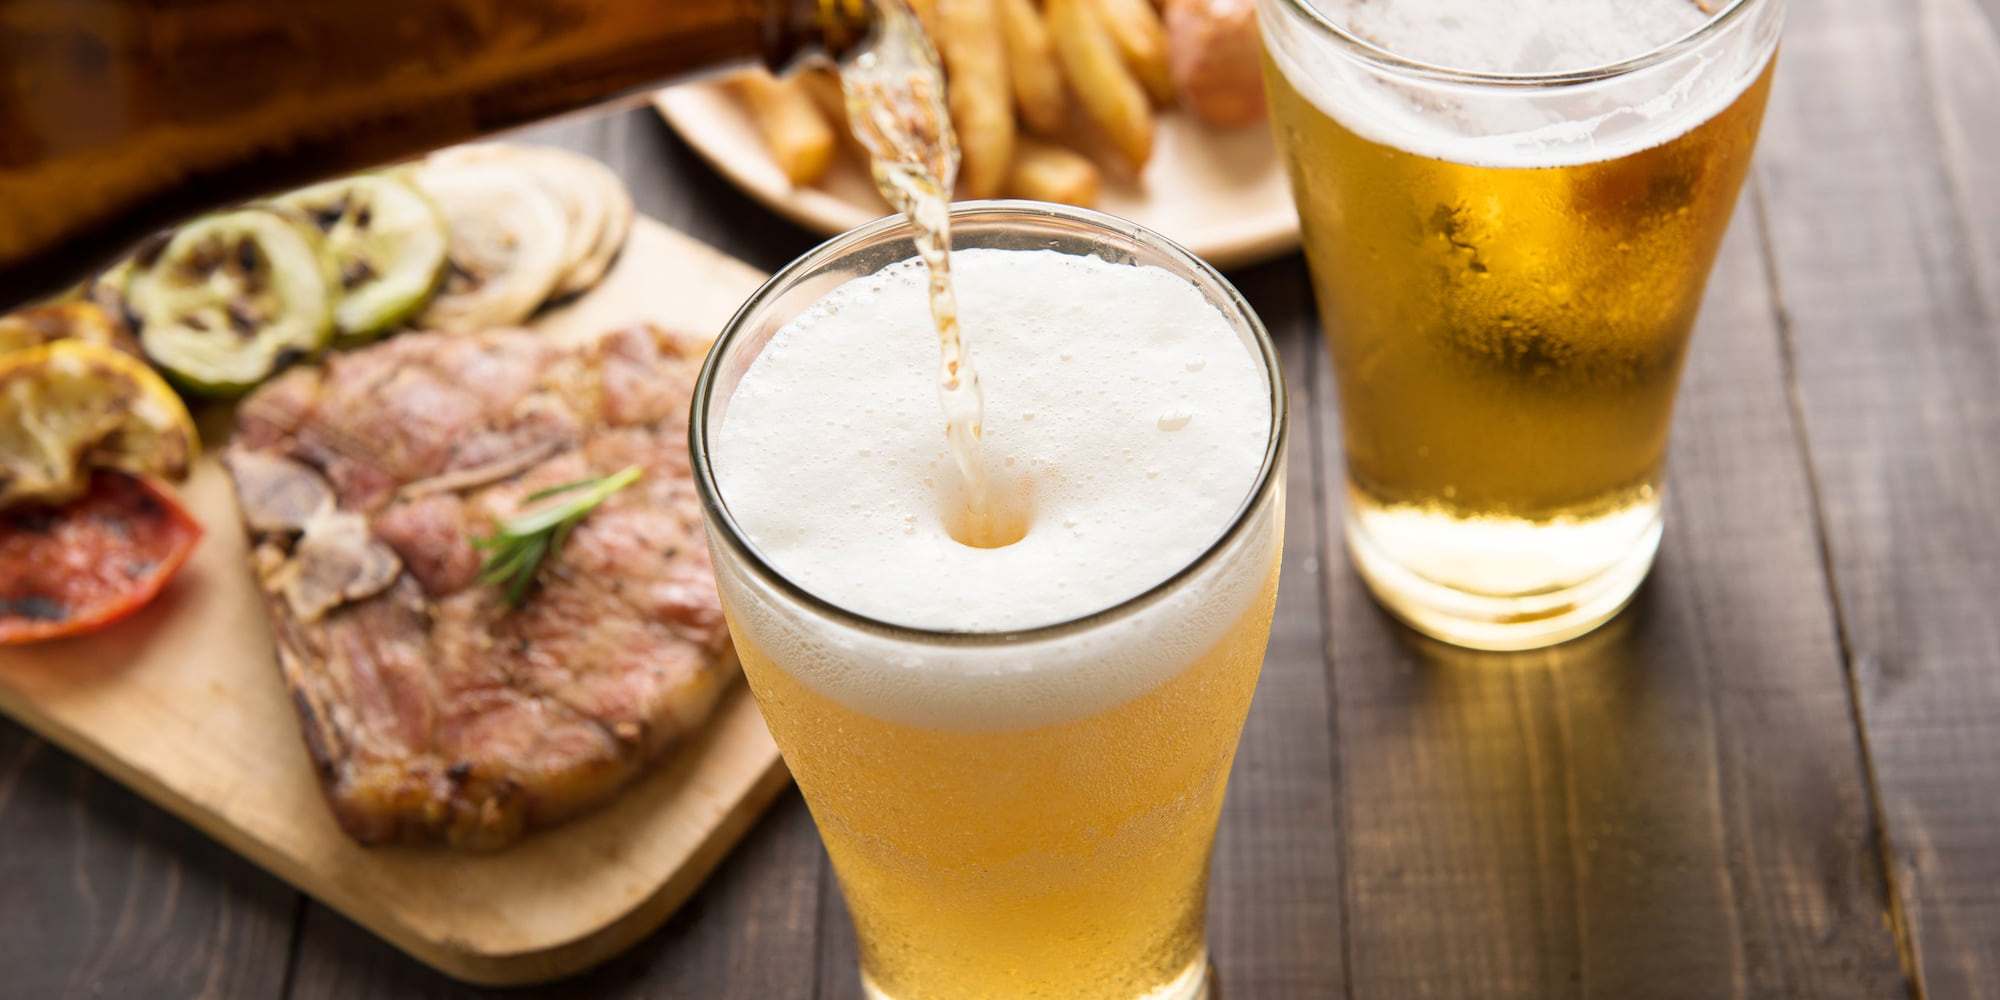 Bia và món ăn bổ sung cho nhau